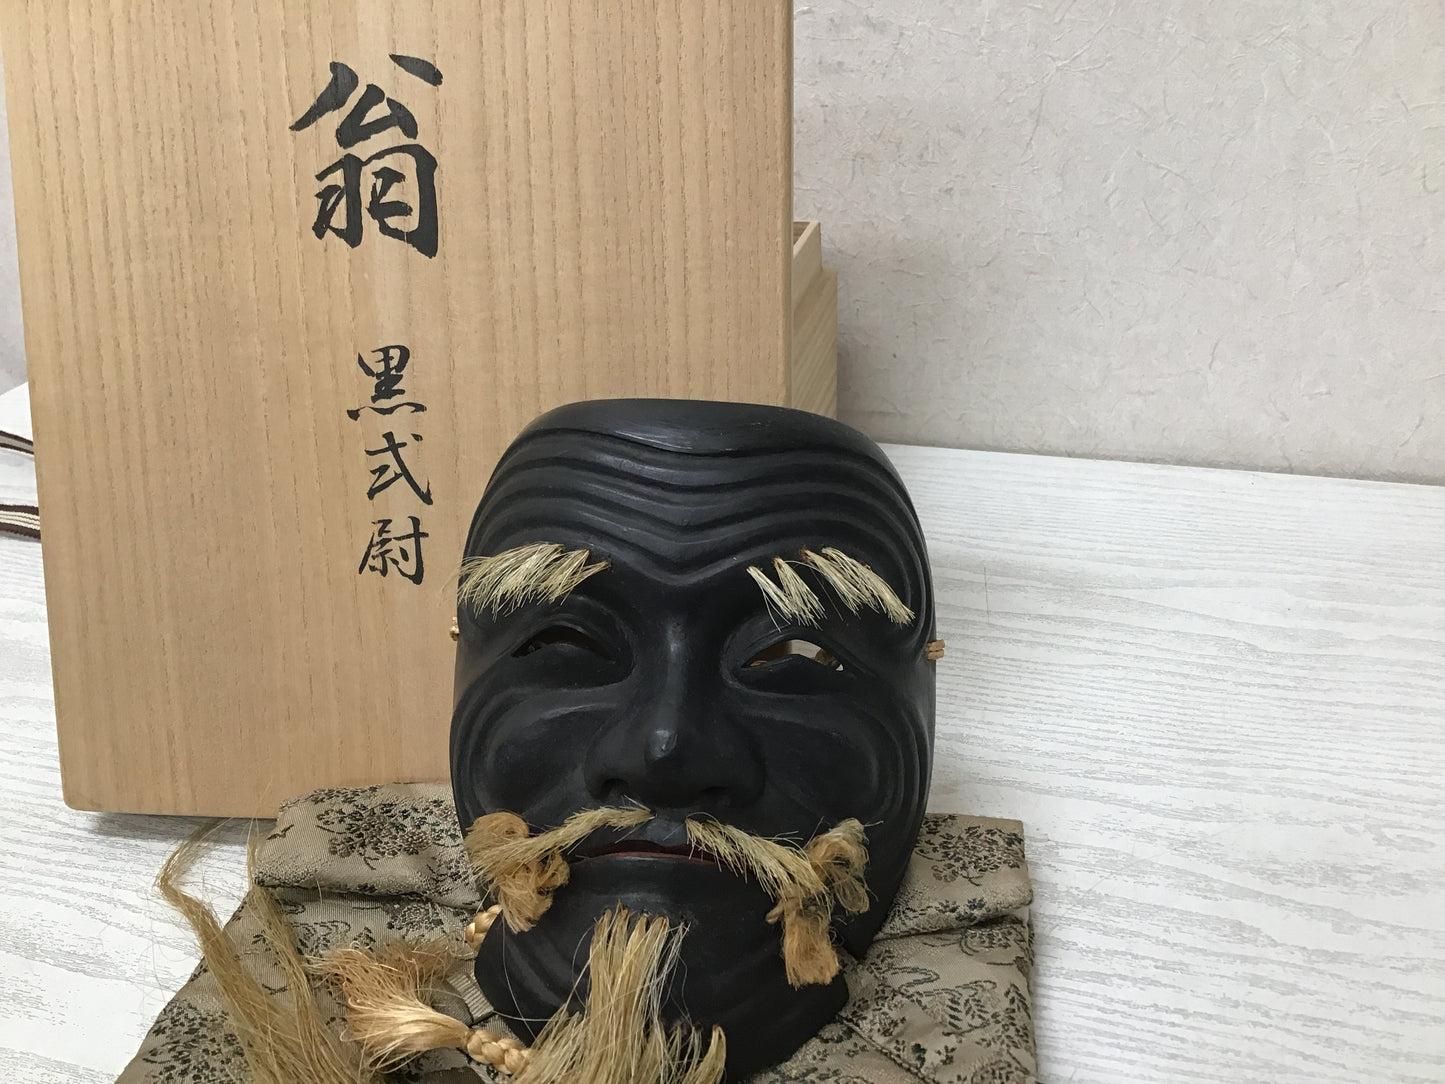 Y2759 NOH MASK wood carving old man Kokushikijo signed box Japan vintage antique